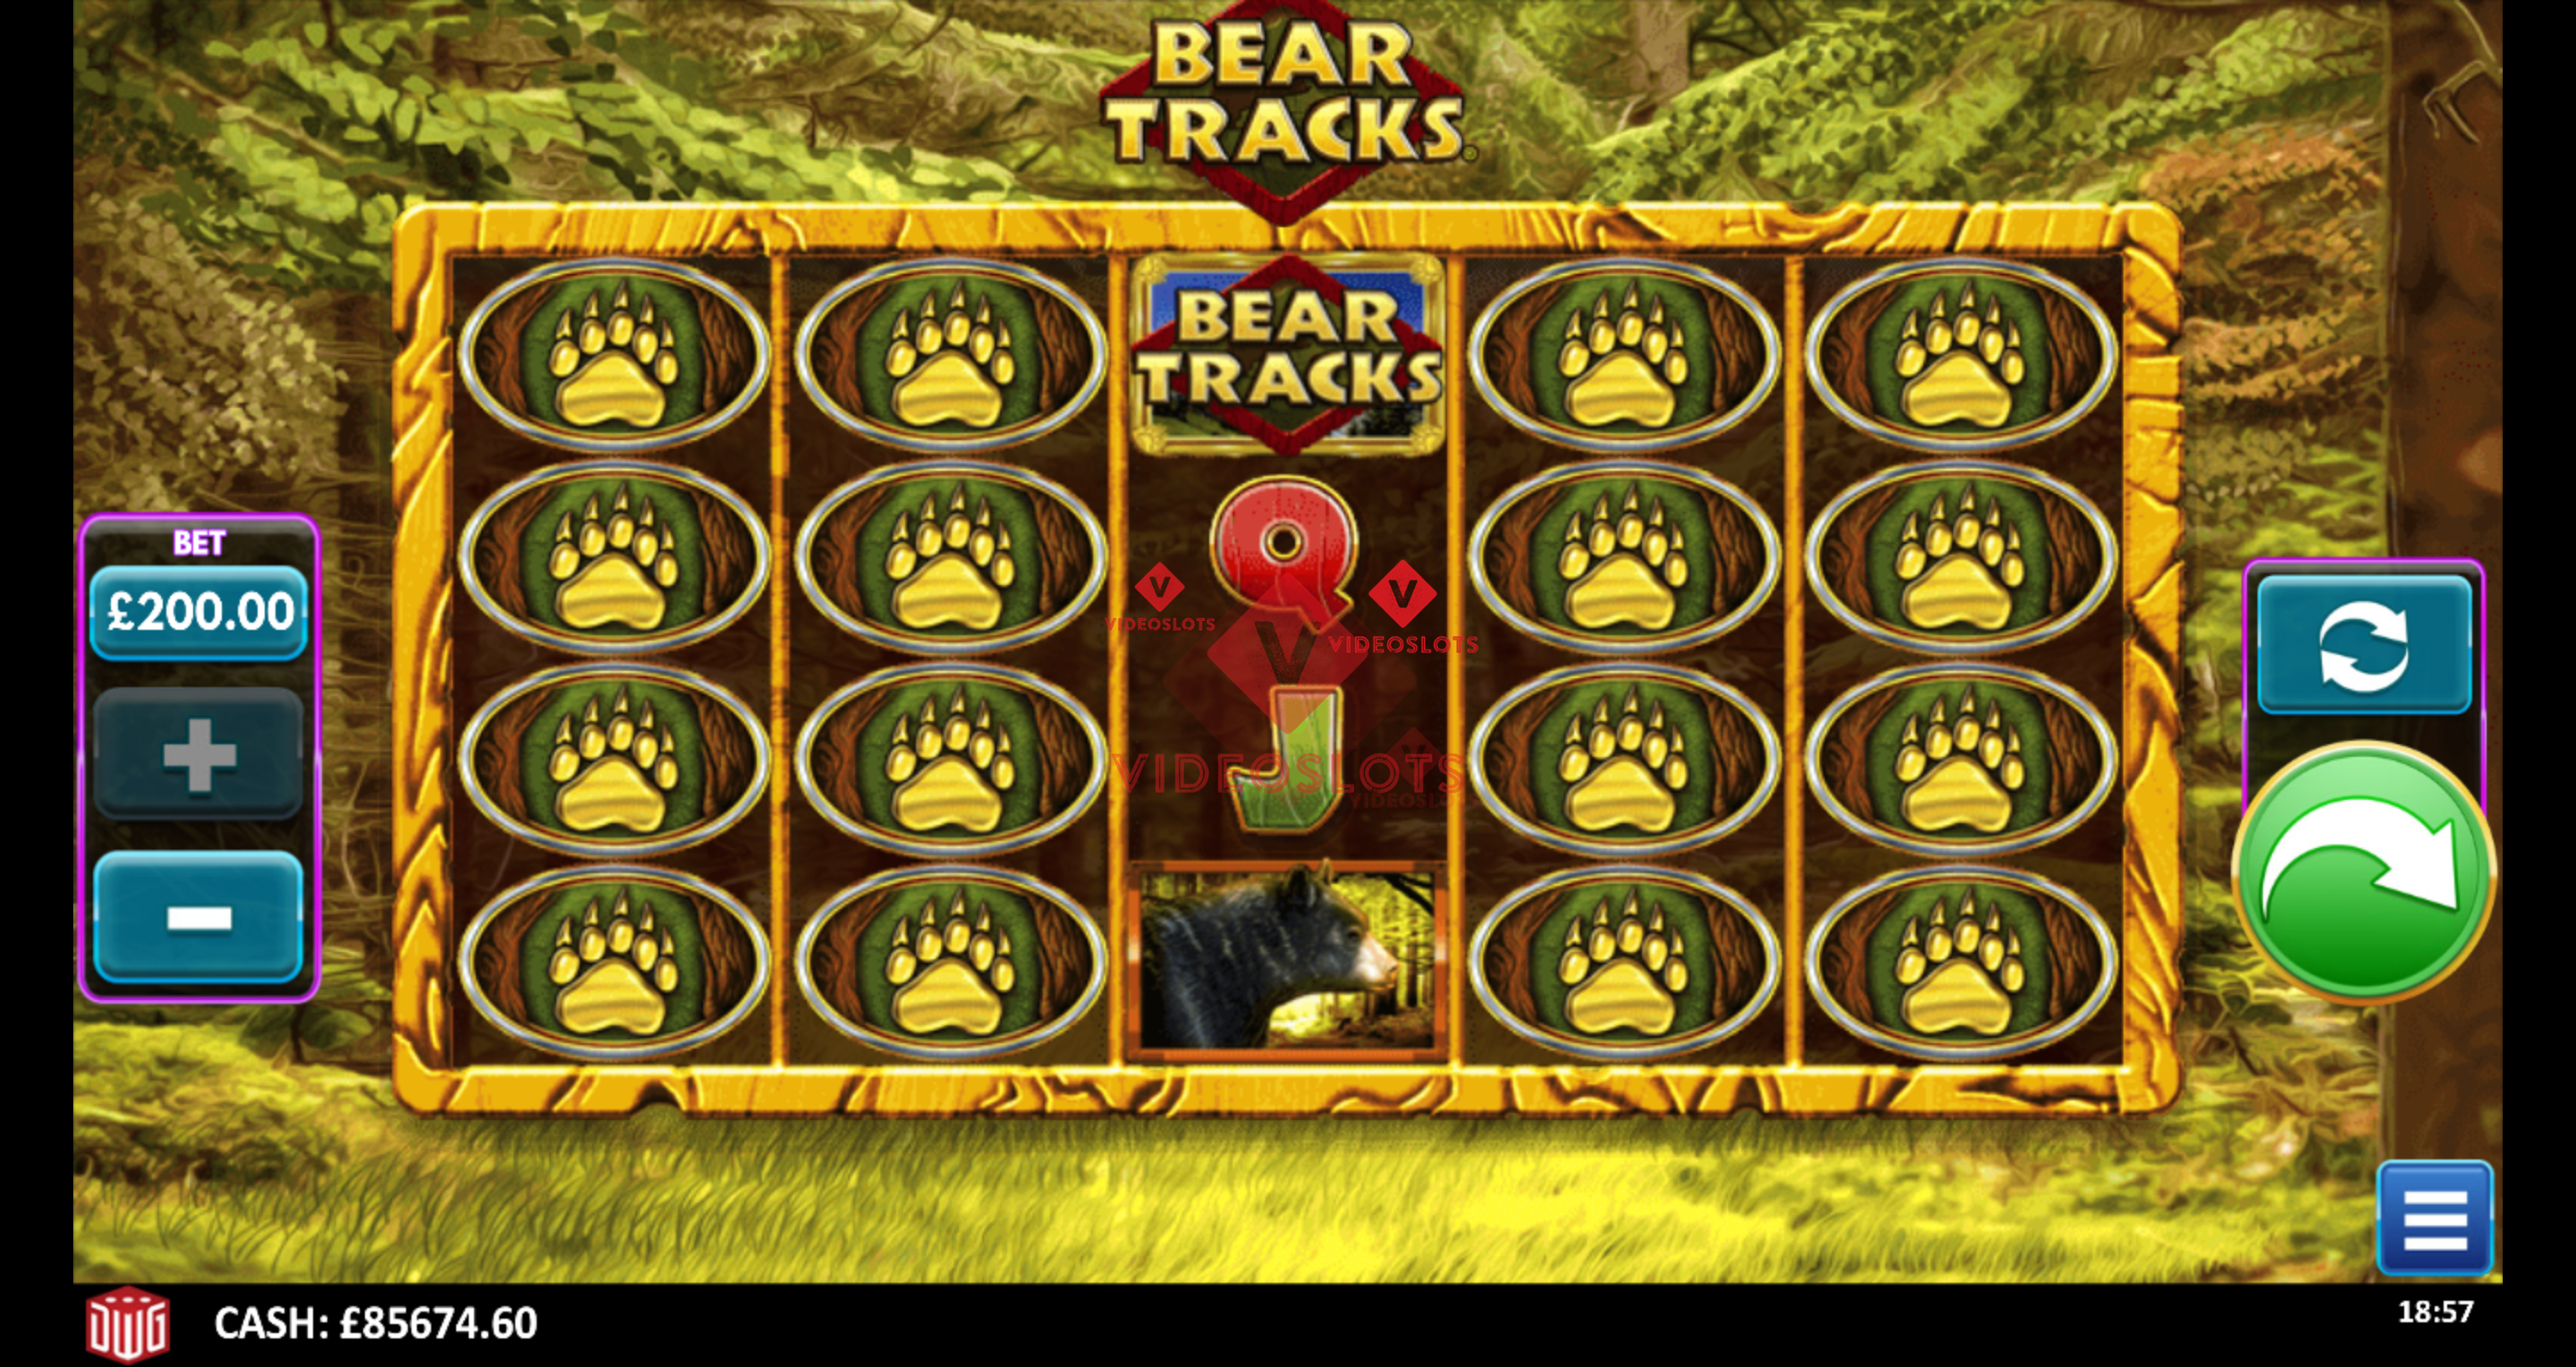 Base Game for Bear Tracks slot from Greentube